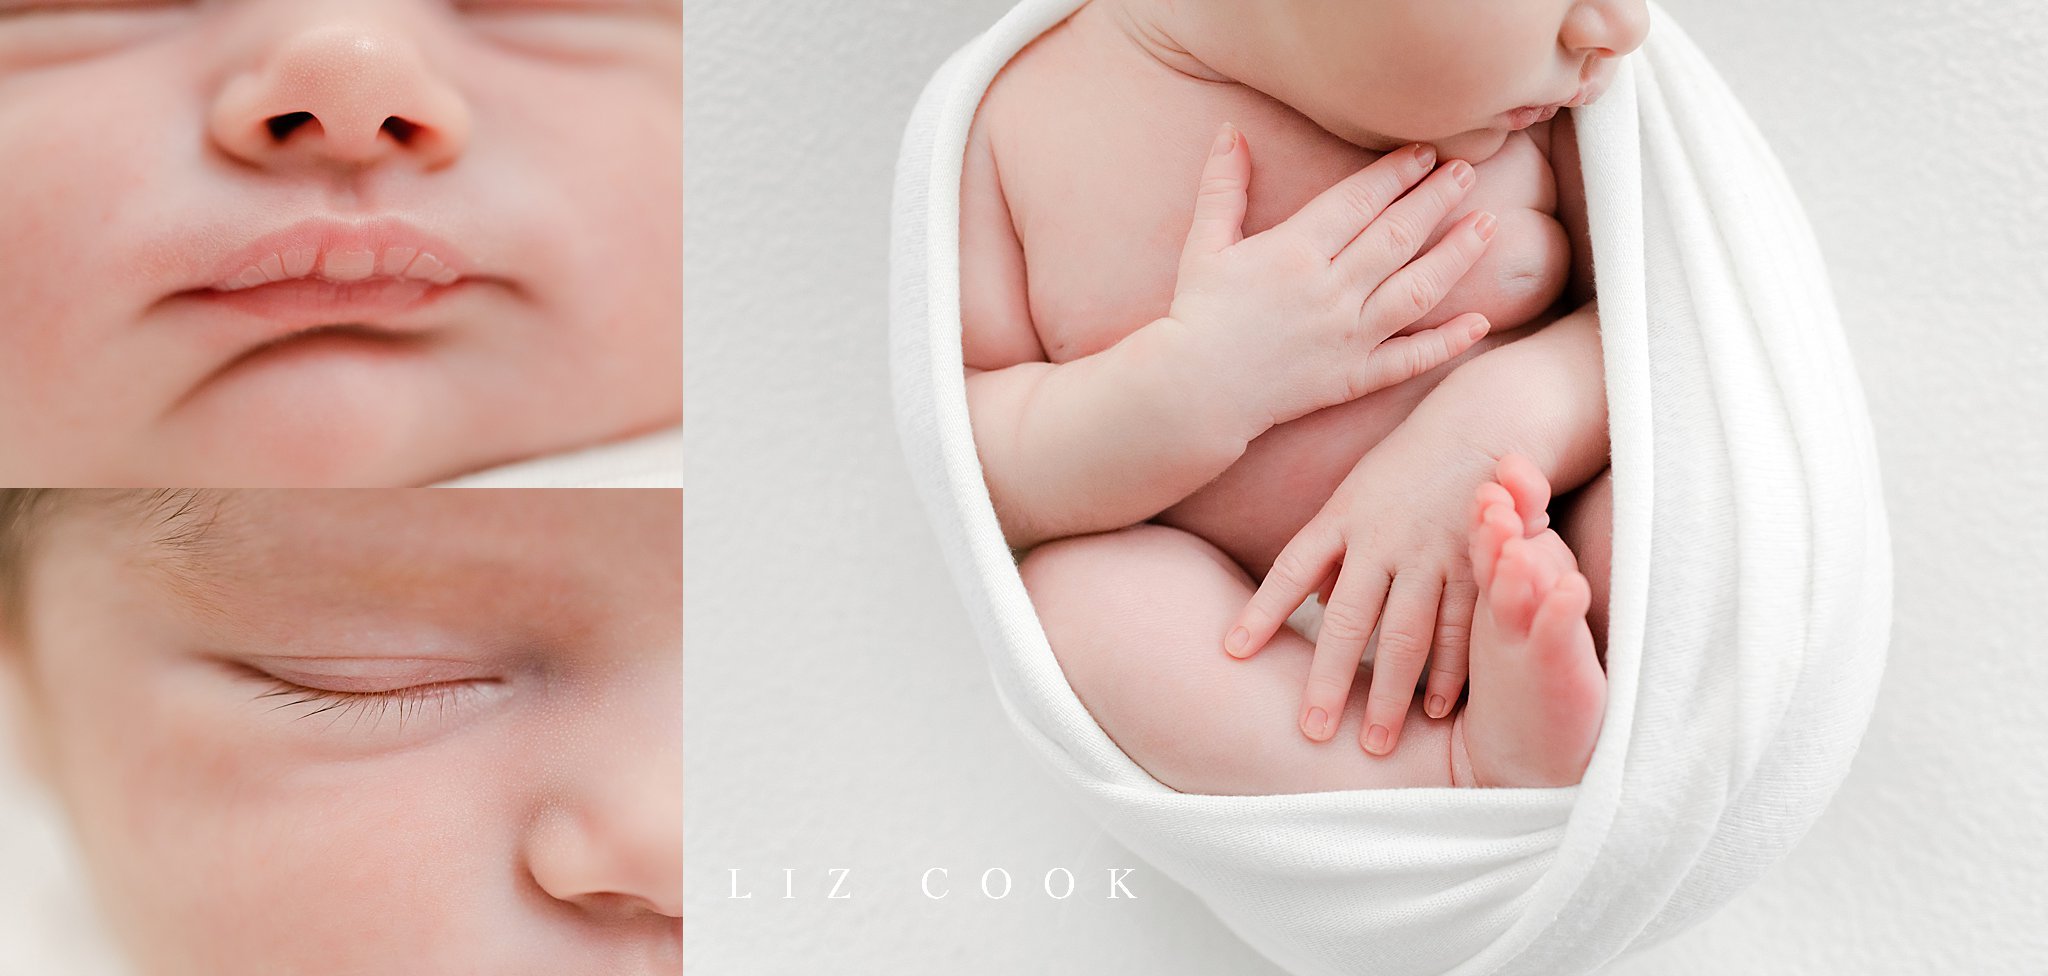  © 2022 Liz Cook Photography | www.liz-cook.com 